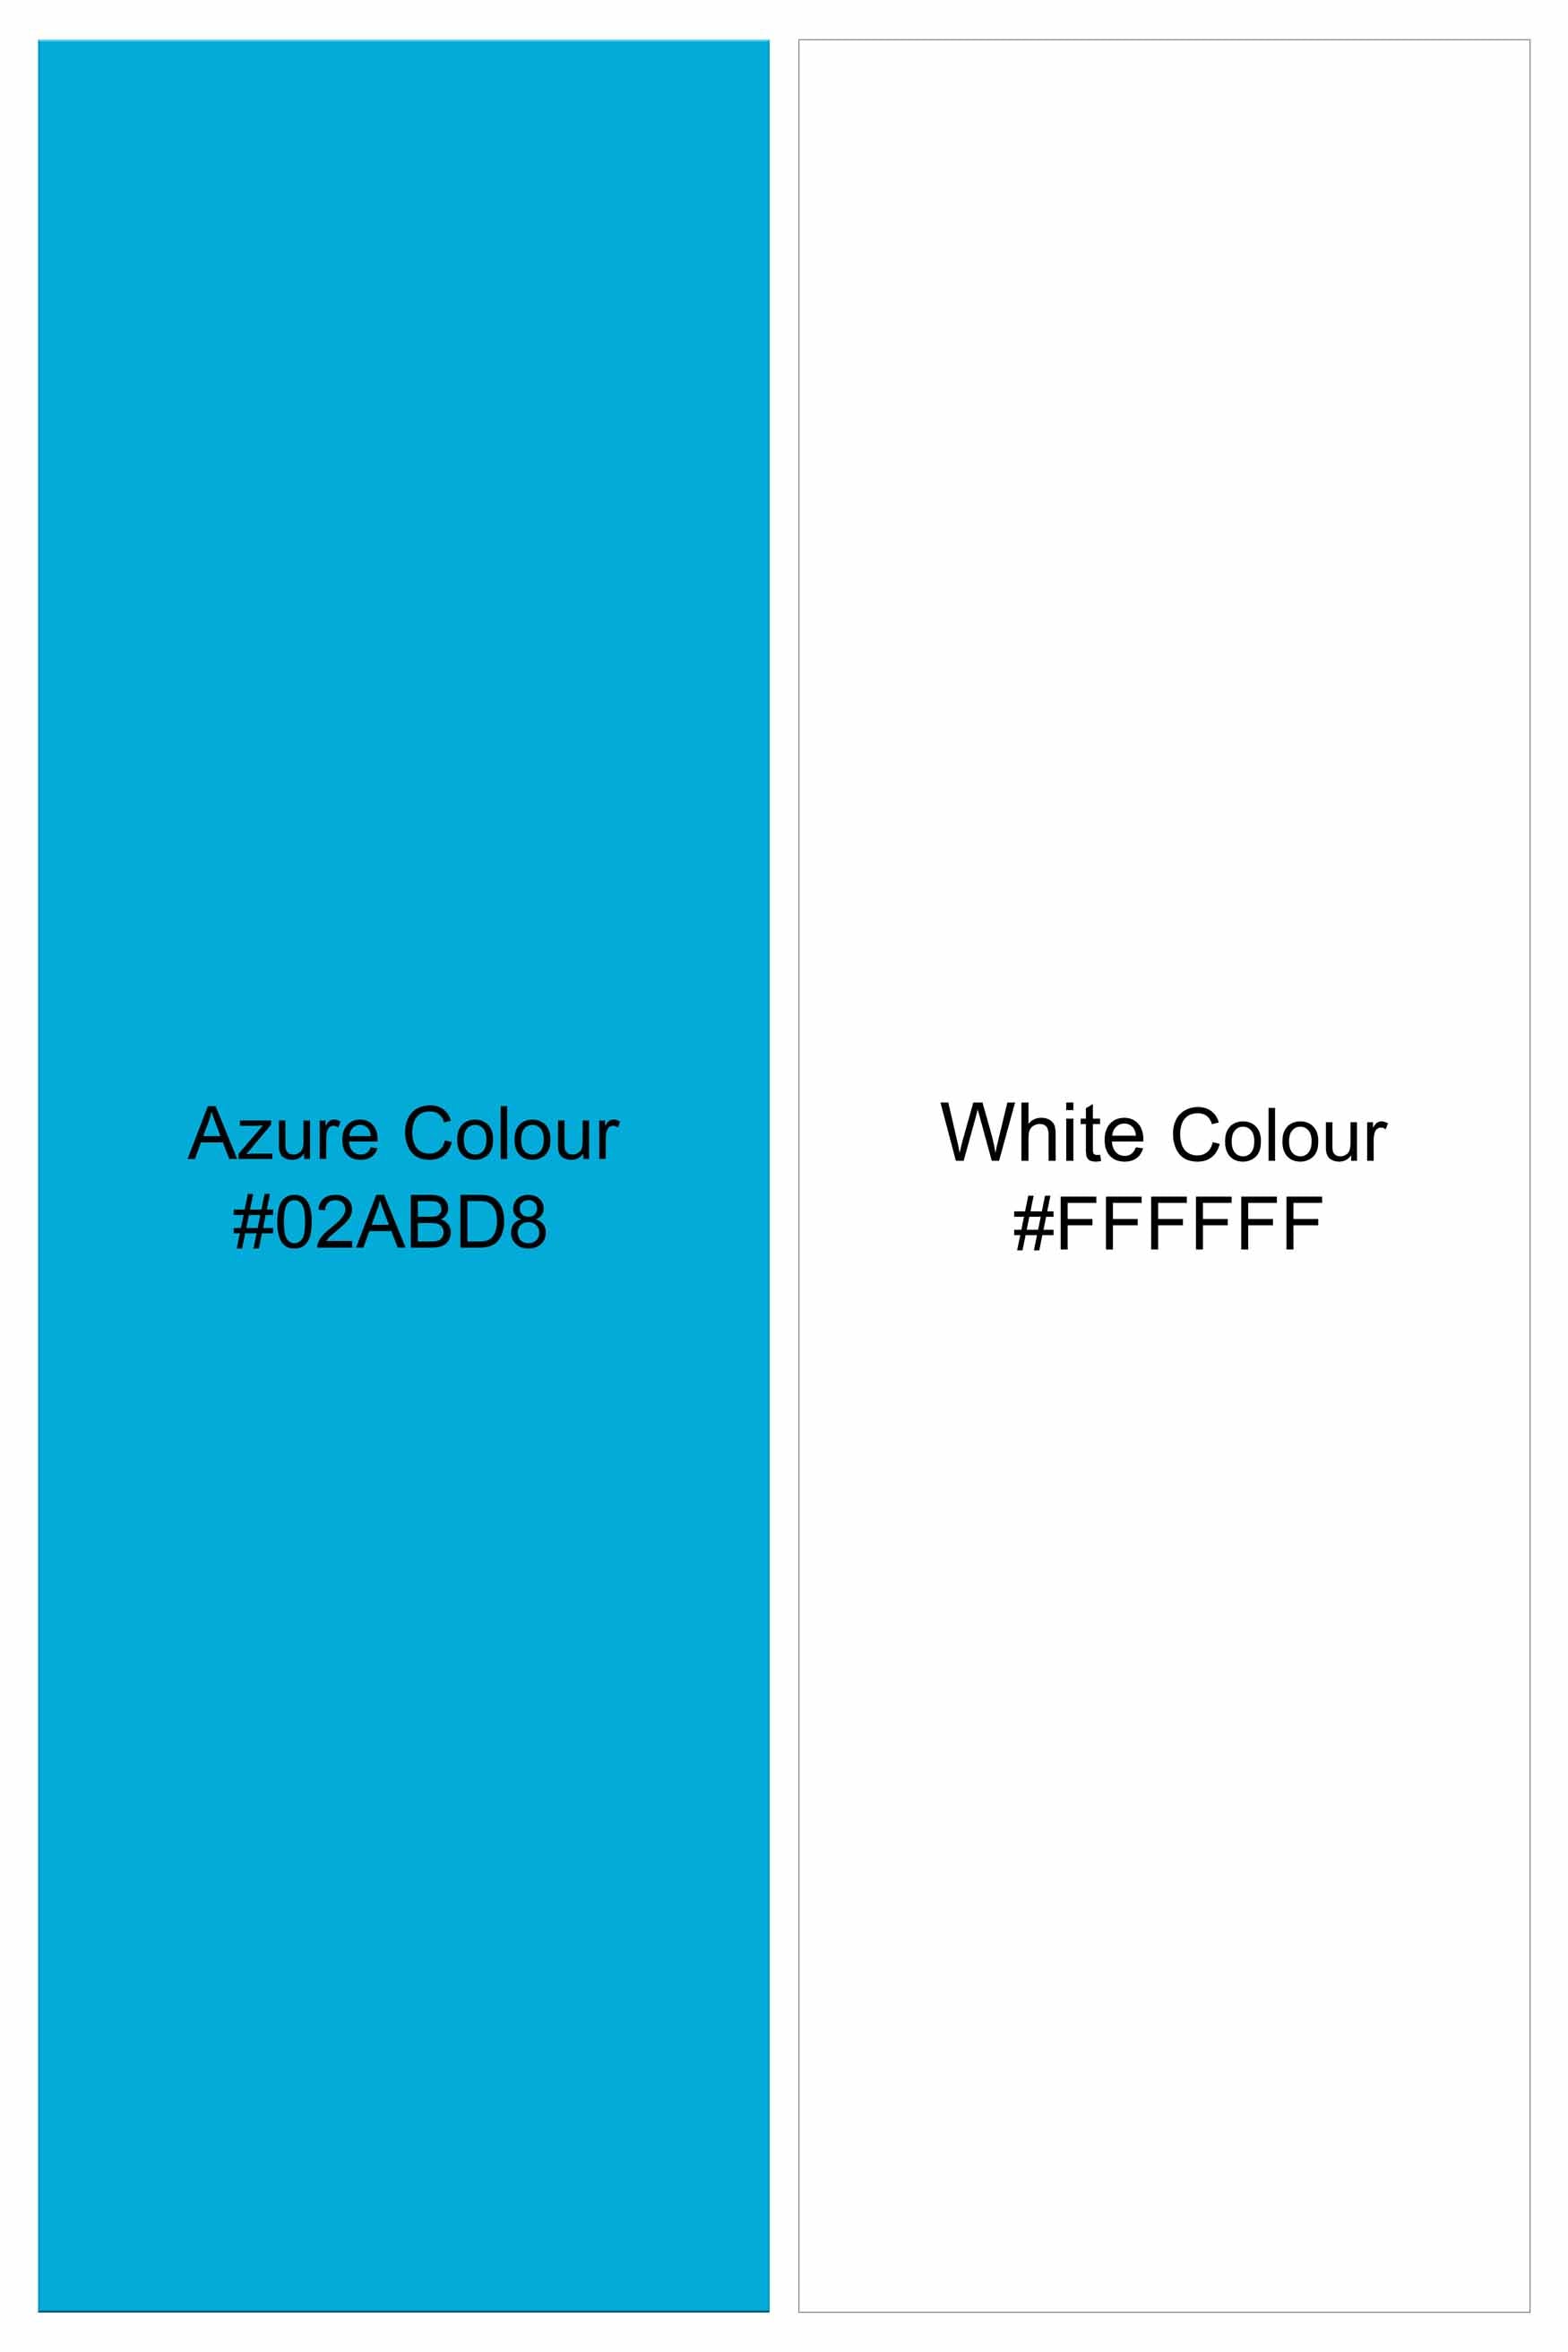 Azure Blue and White Printed with Funky Patchwork Royal Oxford Designer Shirt 6203-E174-38, 6203-E174-H-38, 6203-E174-39, 6203-E174-H-39, 6203-E174-40, 6203-E174-H-40, 6203-E174-42, 6203-E174-H-42, 6203-E174-44, 6203-E174-H-44, 6203-E174-46, 6203-E174-H-46, 6203-E174-48, 6203-E174-H-48, 6203-E174-50, 6203-E174-H-50, 6203-E174-52, 6203-E174-H-52